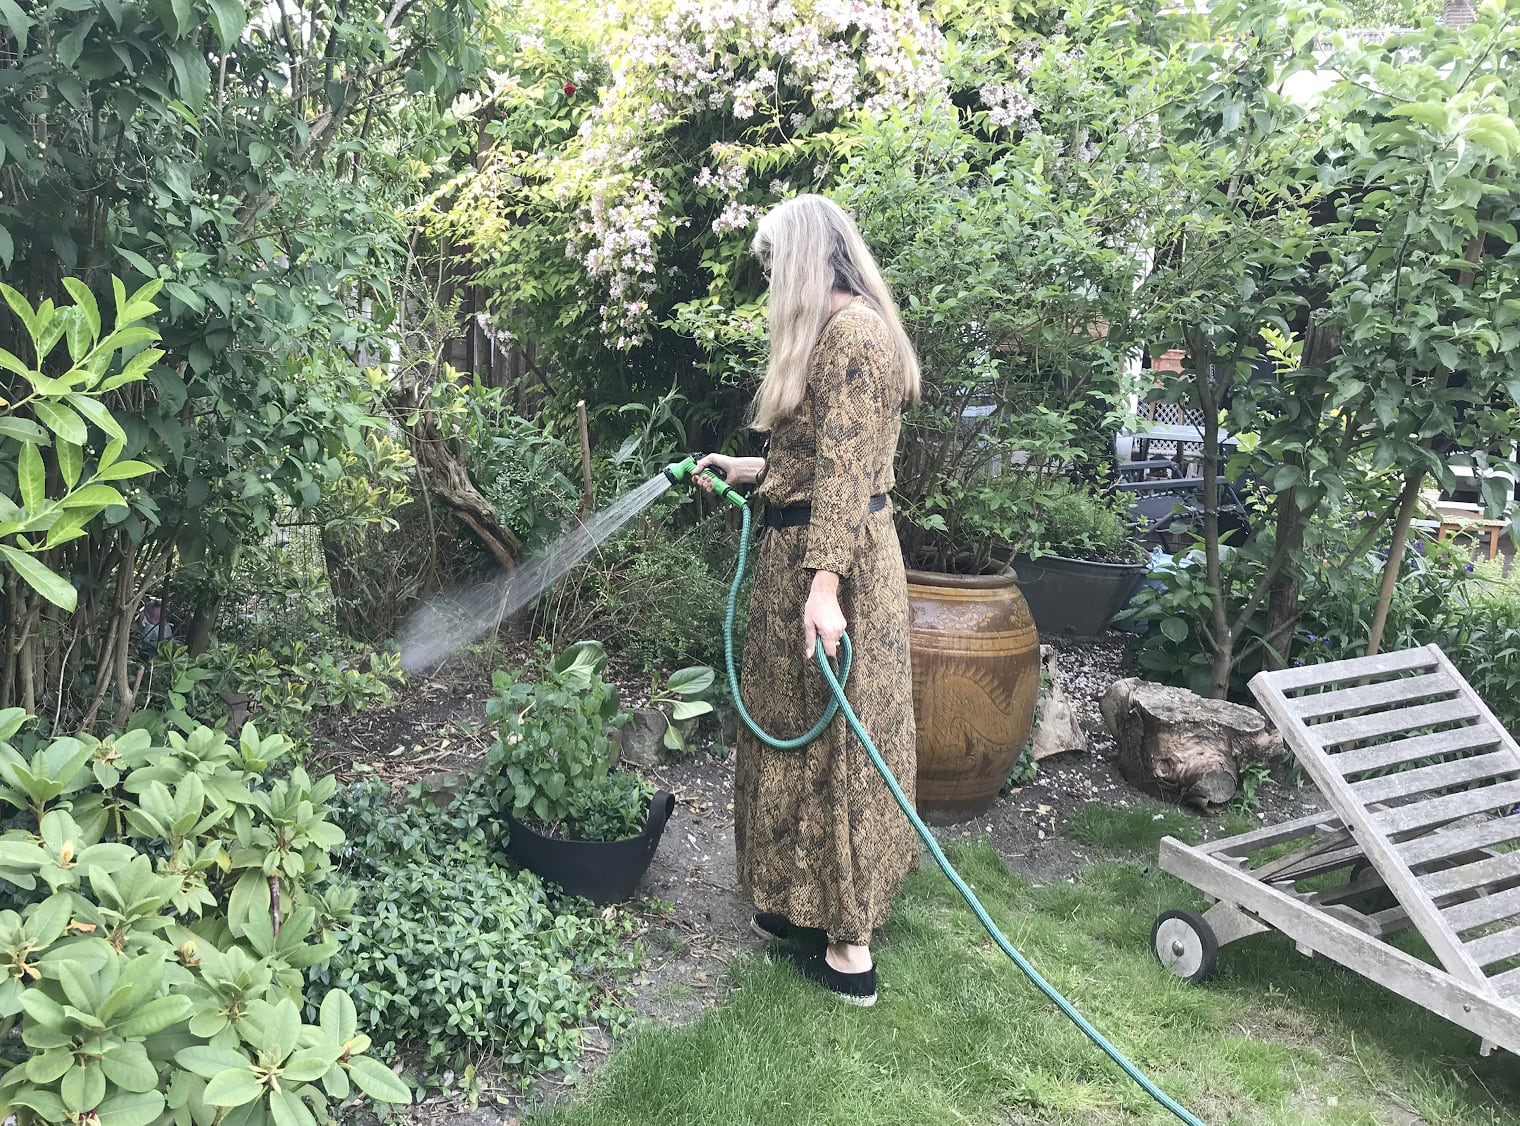 Eine ältere Frau mit grauem Haar bewässert den Garten ihres Einfamilienhauses.